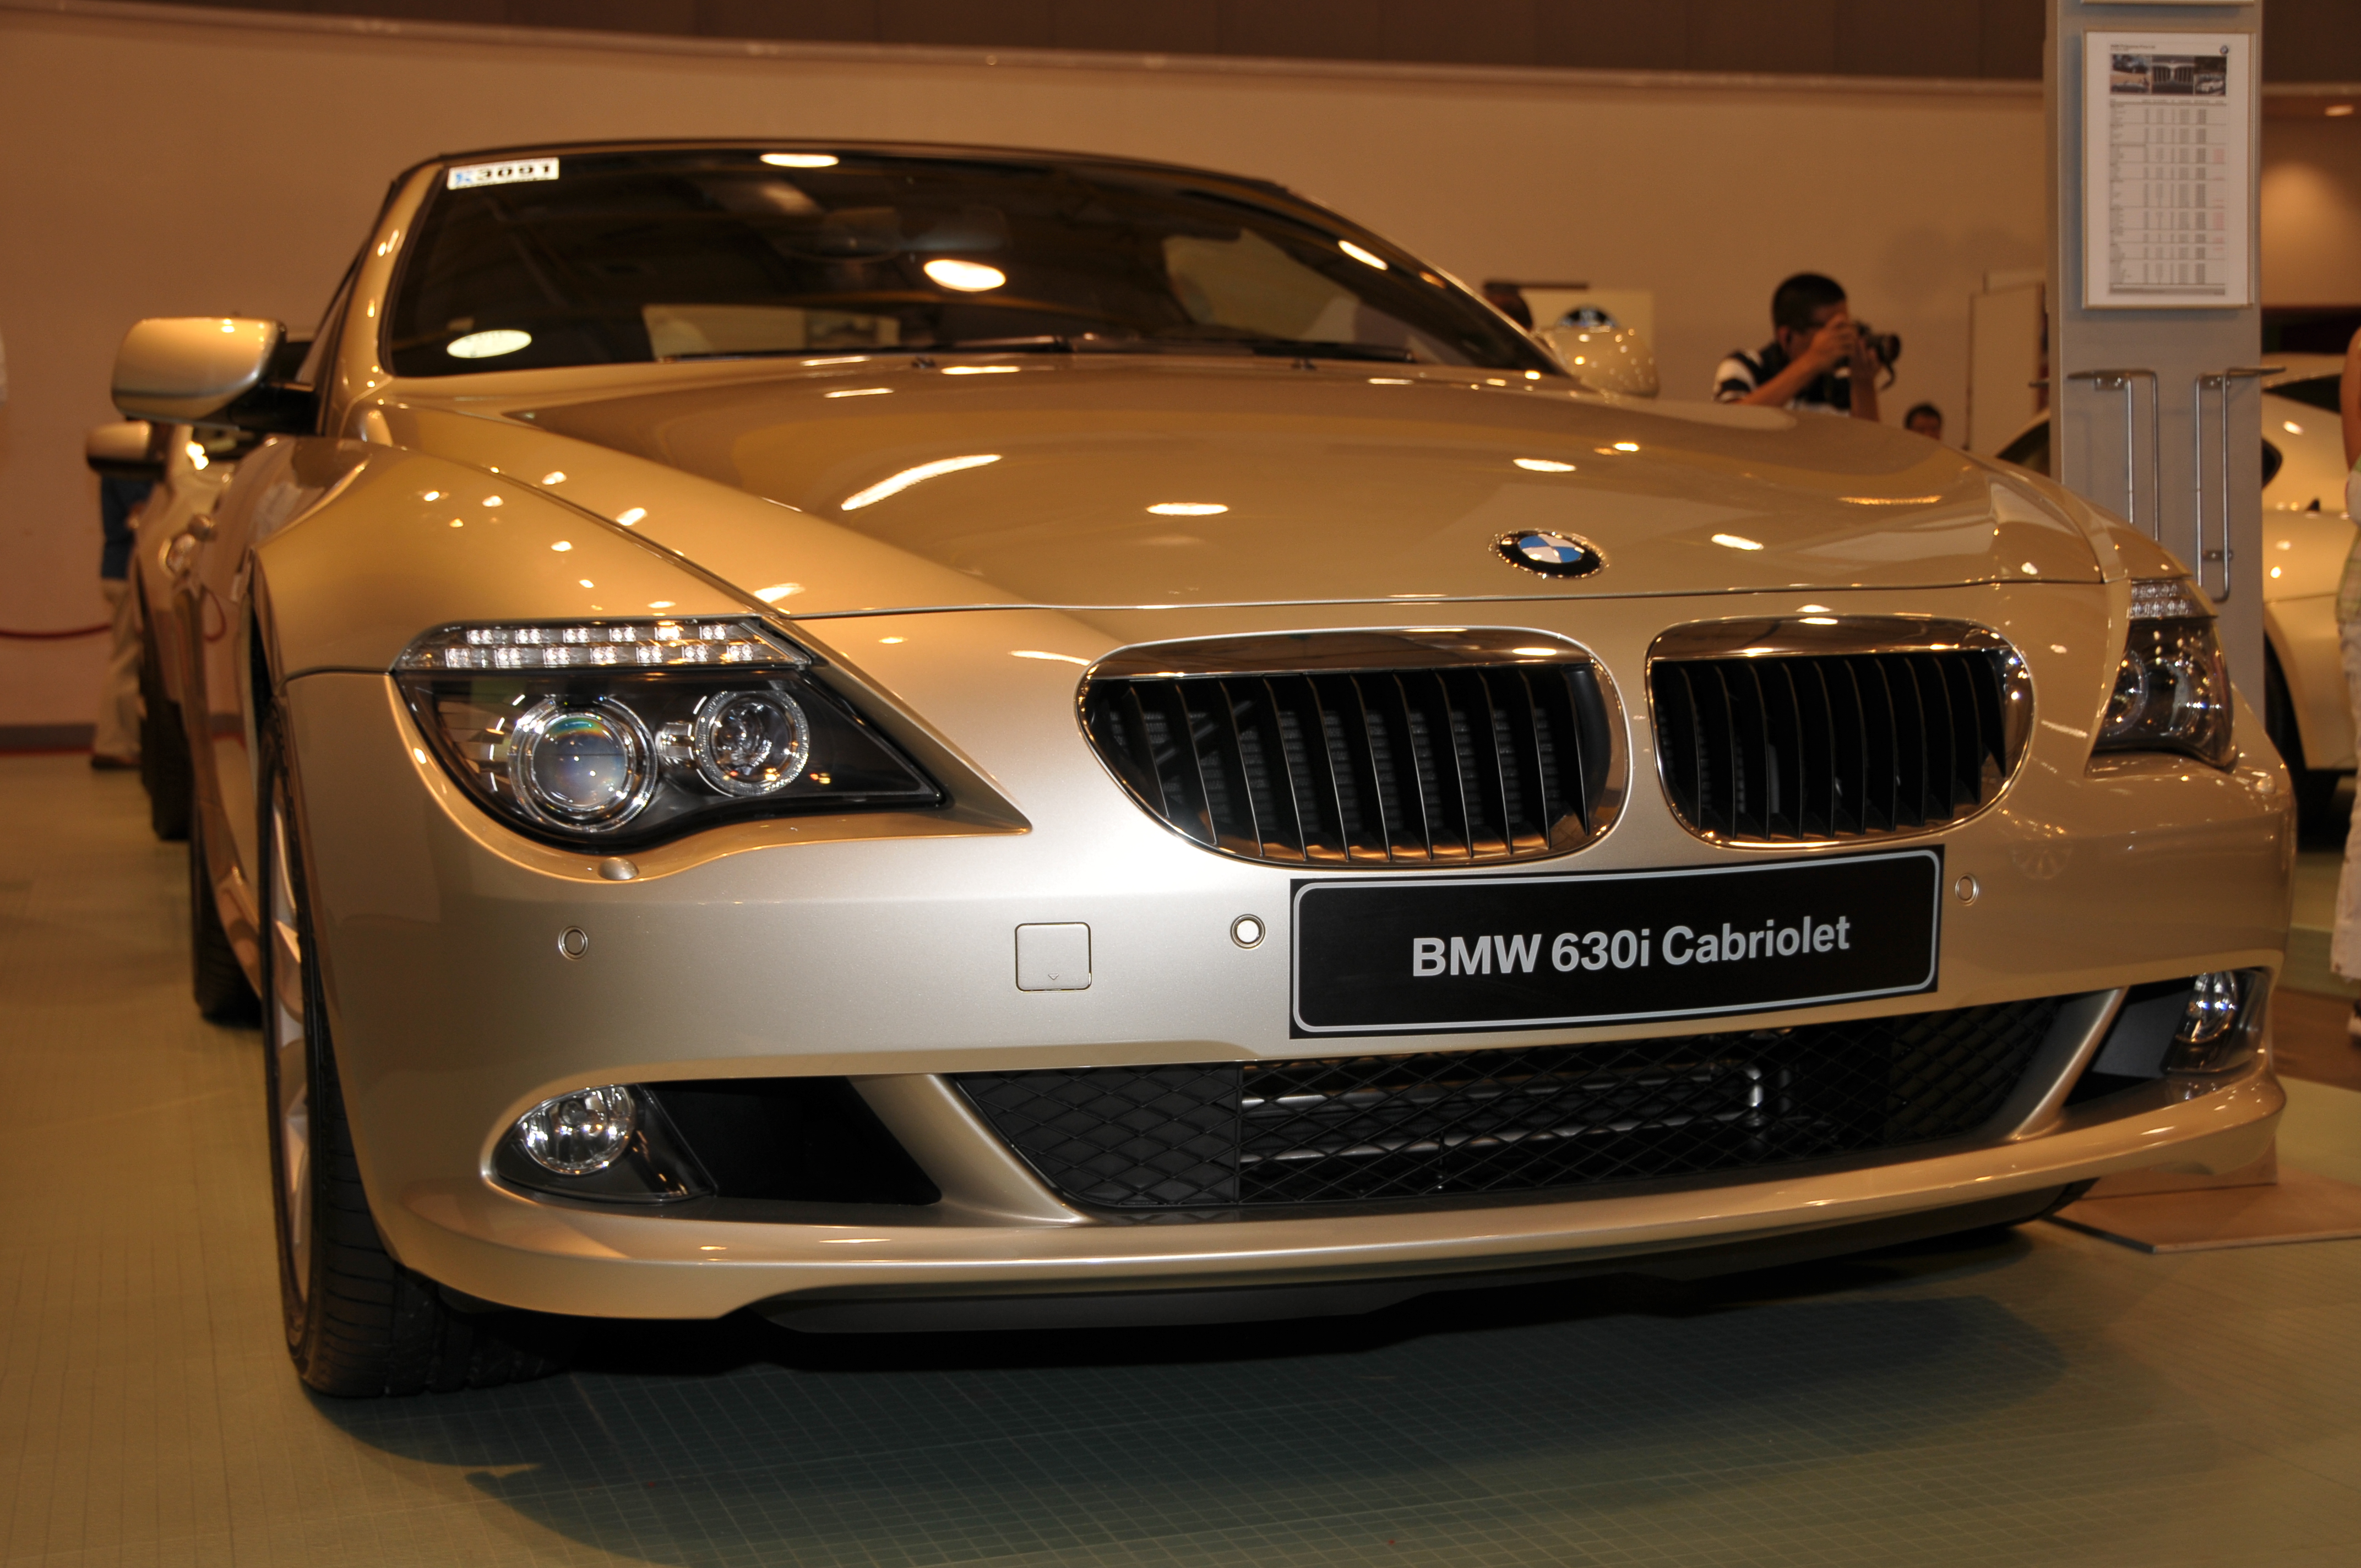 BMW 630i Cabriolet | Flickr - Photo Sharing!